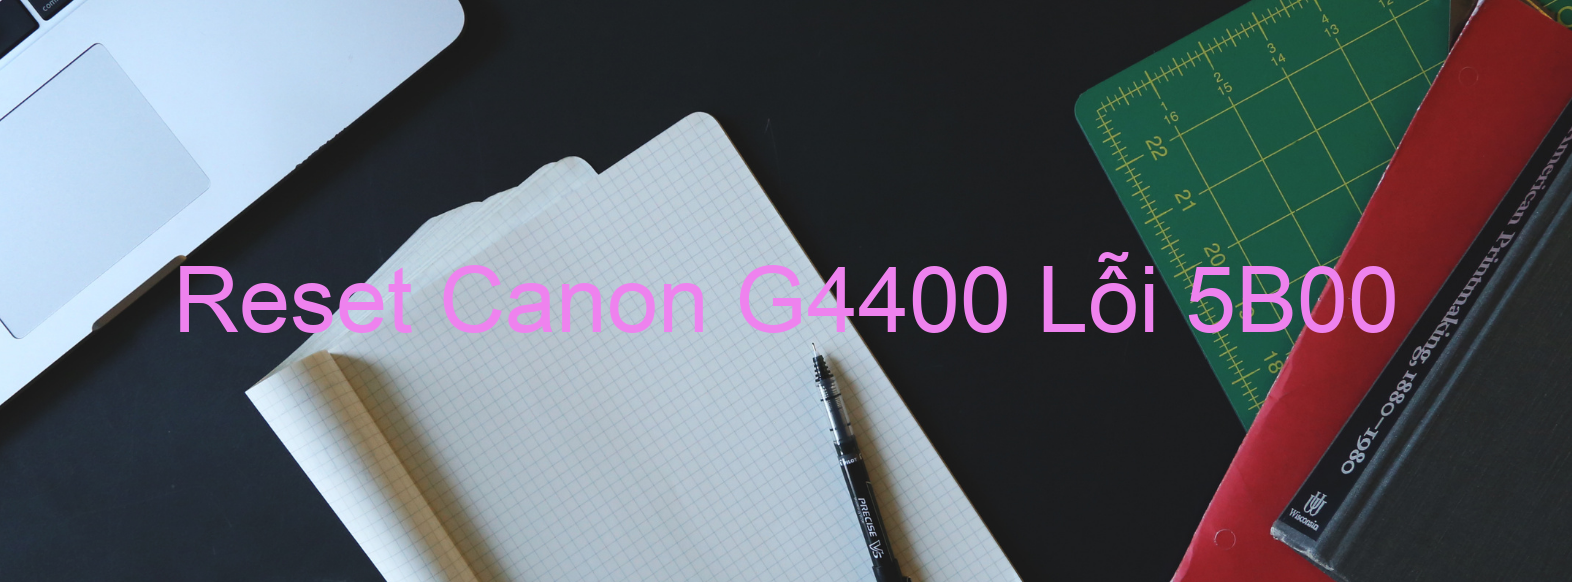 Reset Canon G4400 Lỗi 5B00